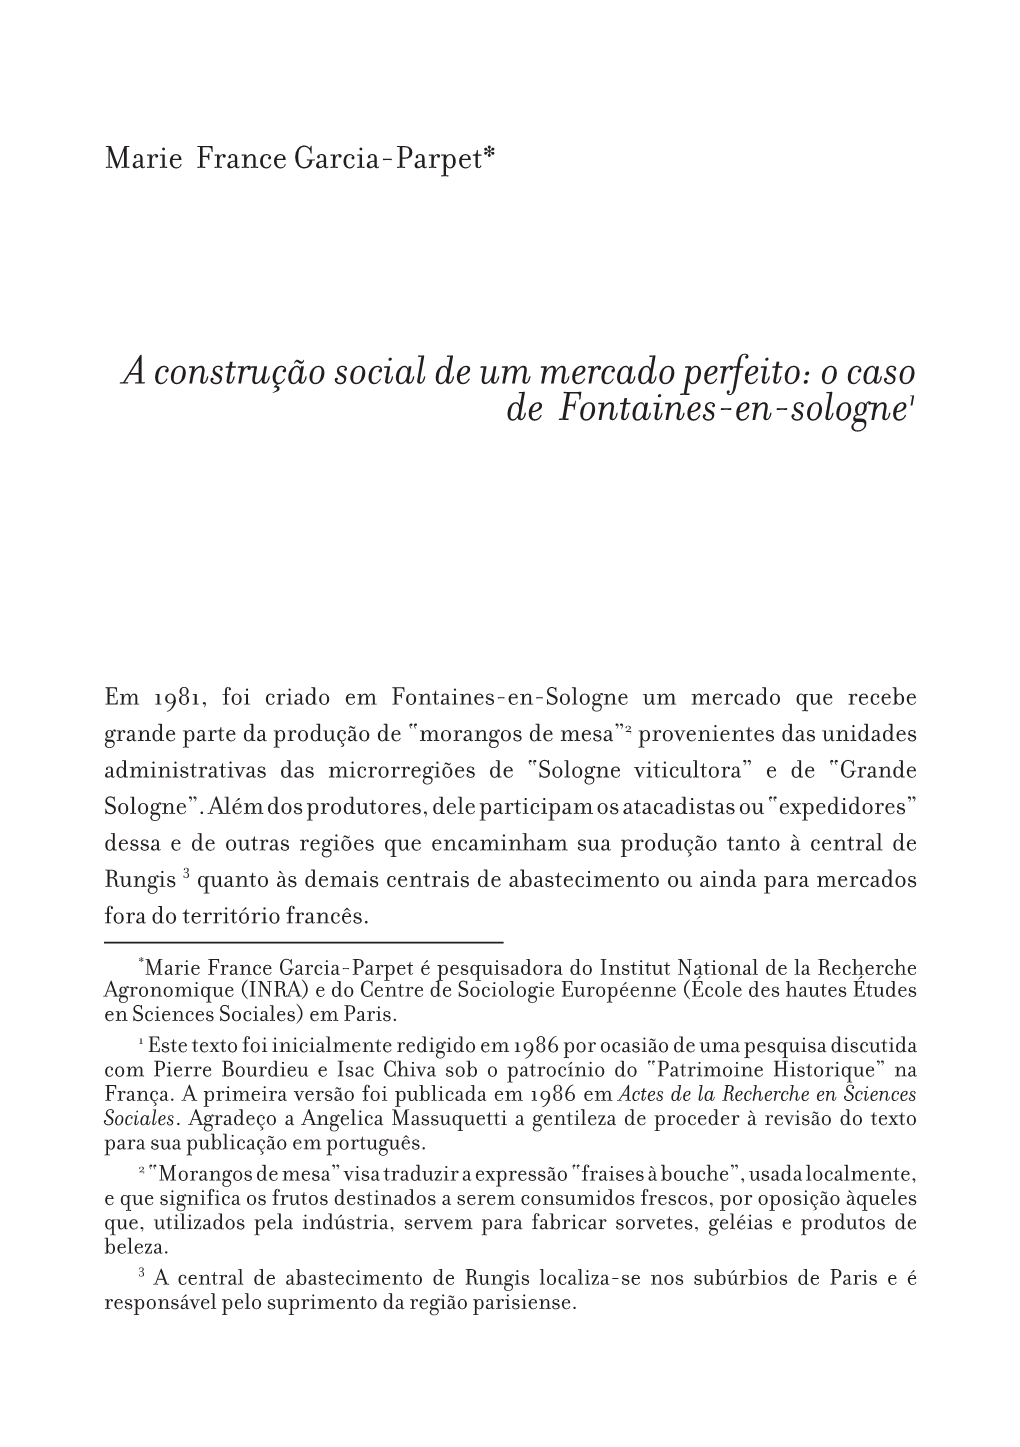 A Construção Social De Um Mercado Perfeito: O Caso De Fontaines-En-Sologne1